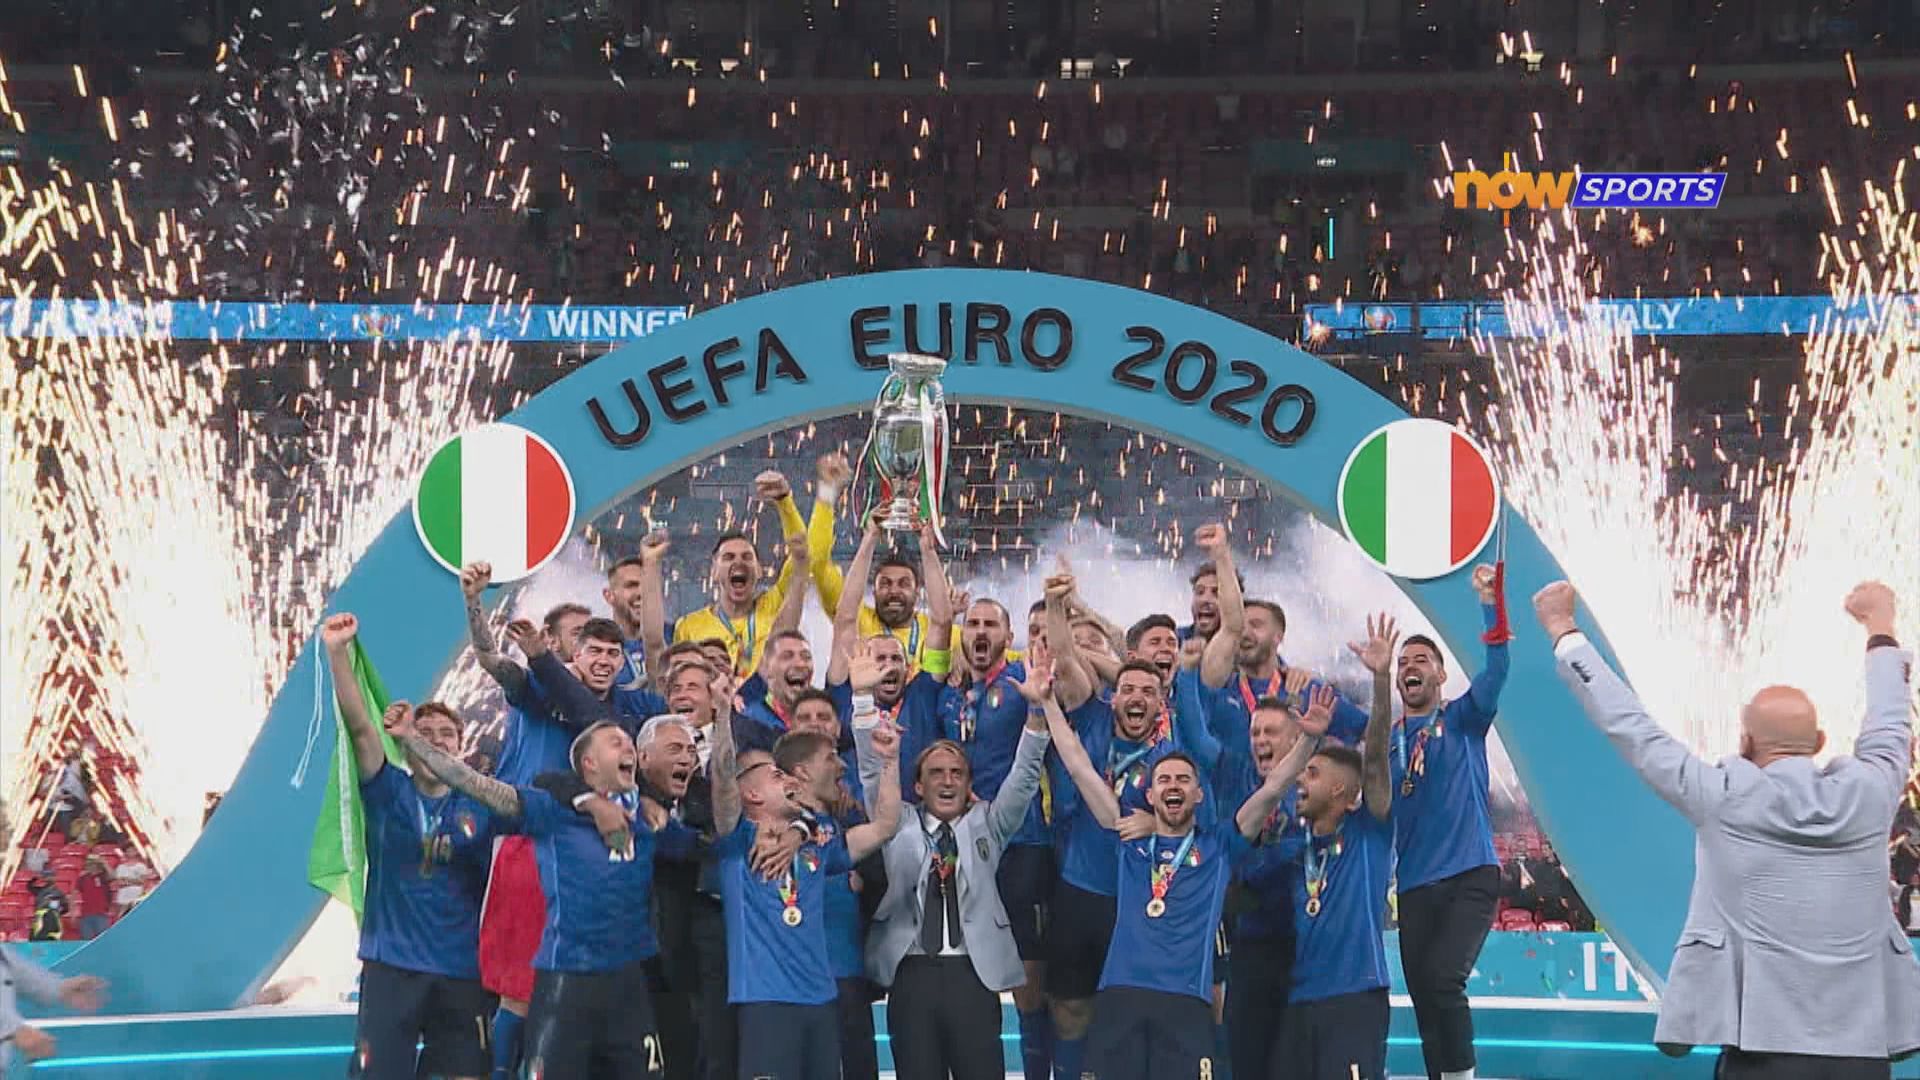 意大利互射十二碼擊敗英格蘭捧歐國盃